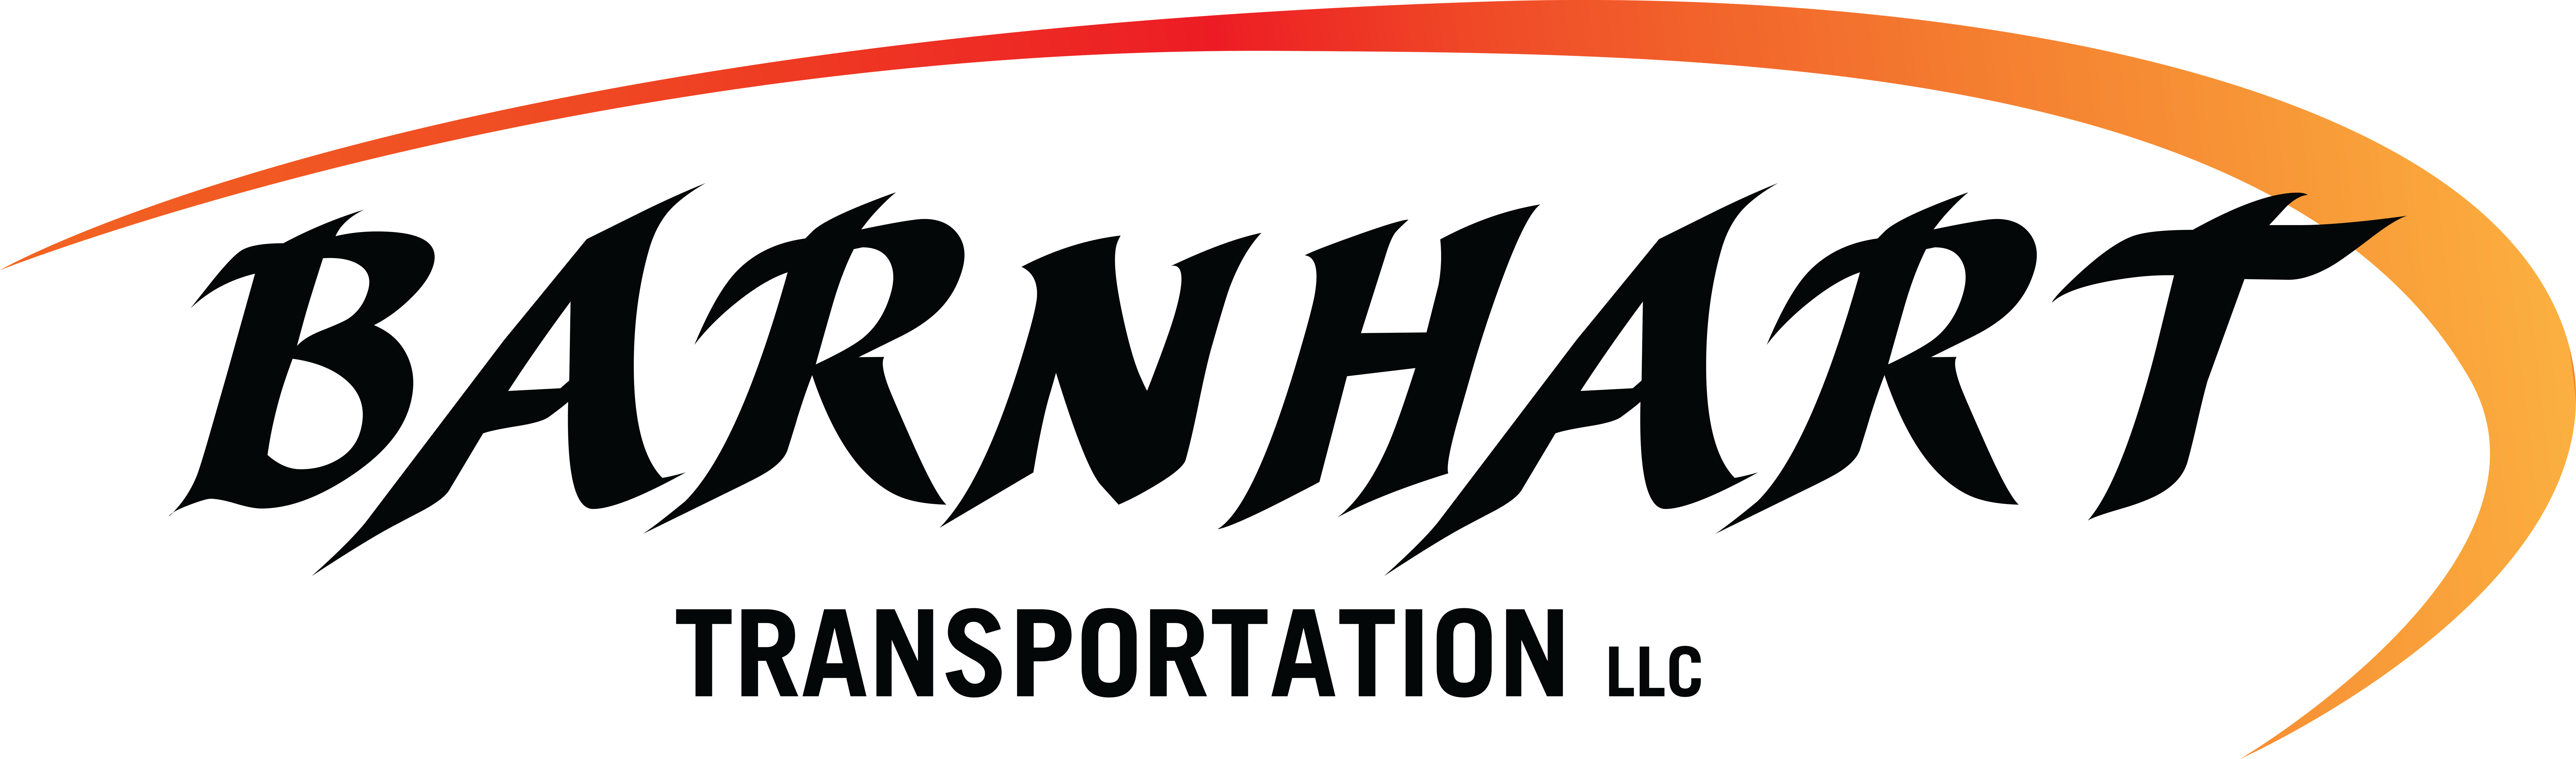 Barnhart Transportation - Logistics Services Provider